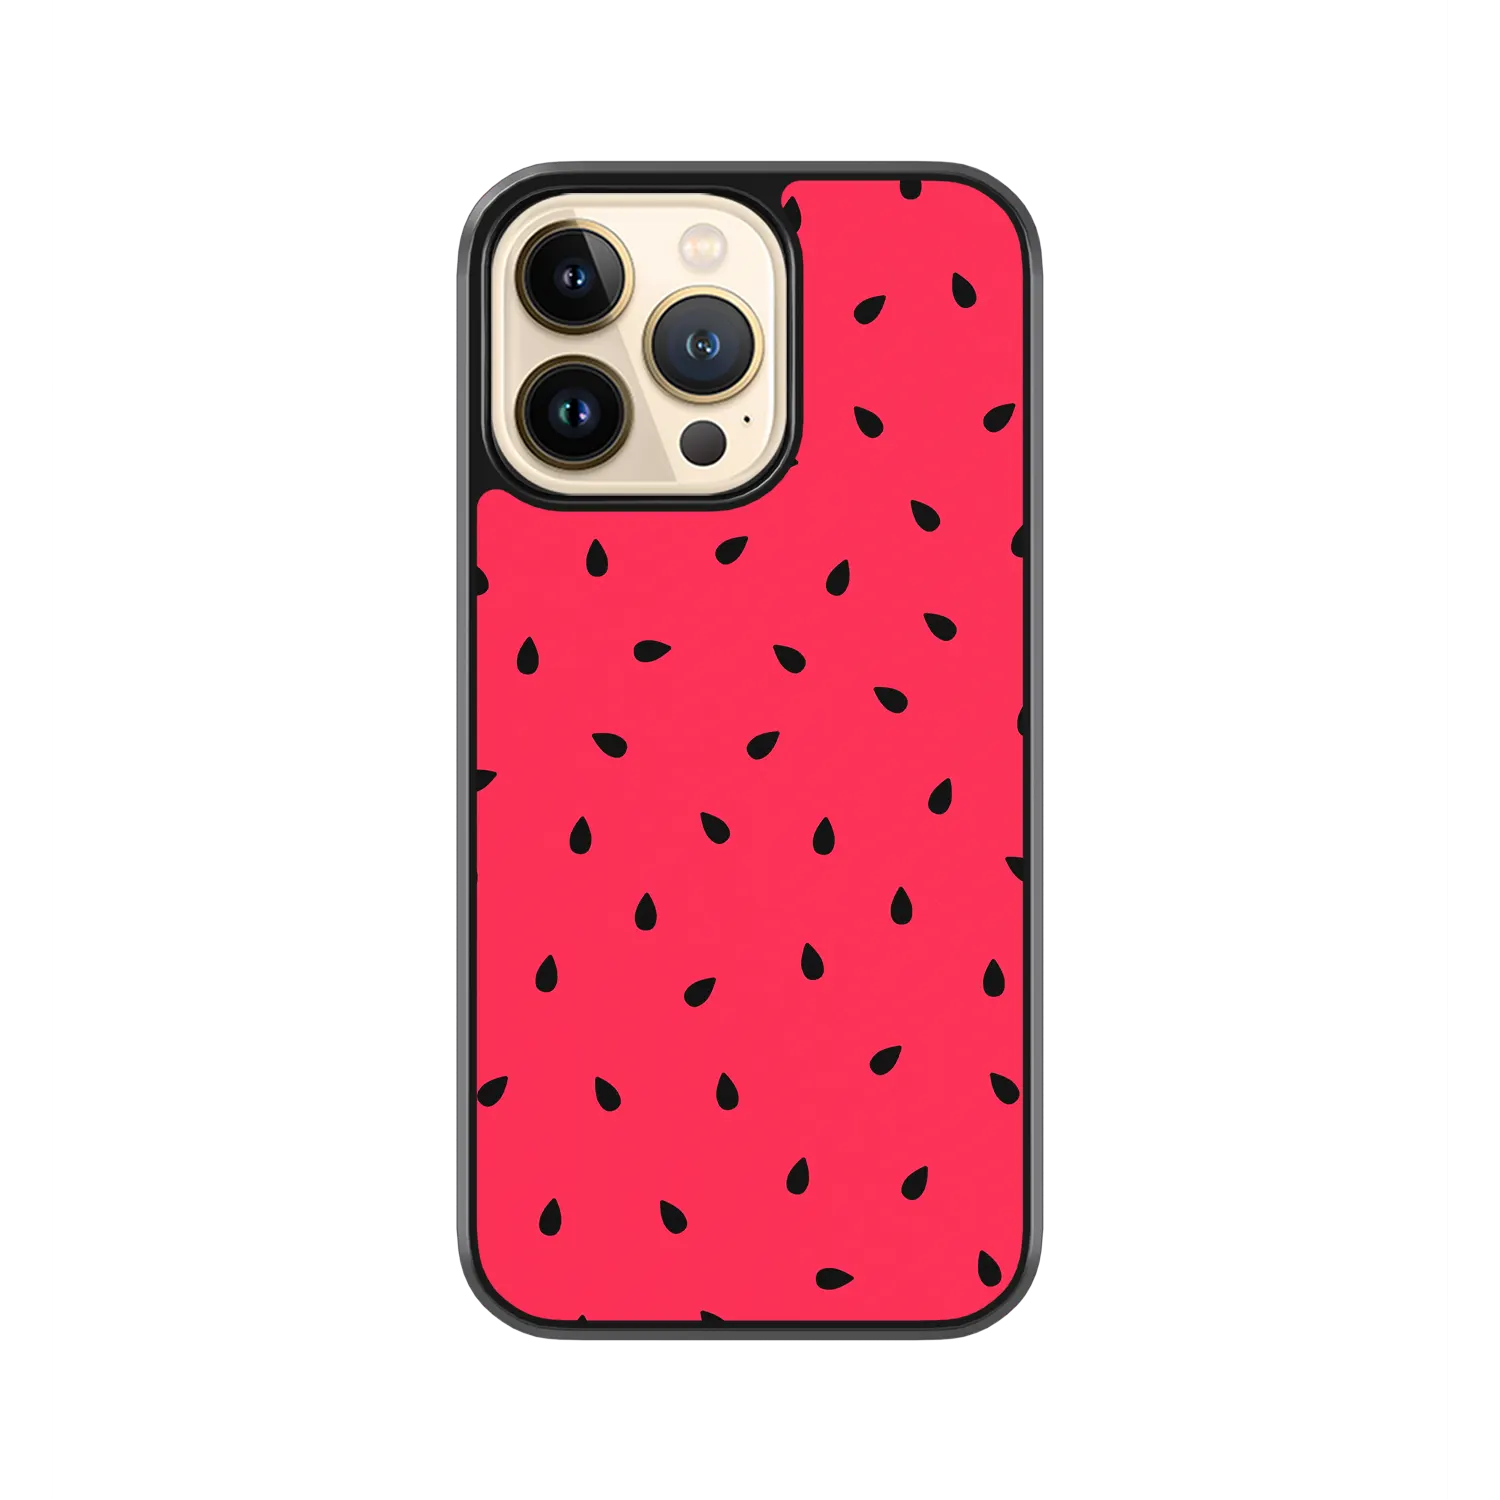 Watermelon Sugar iPhone 11 pro Max Case